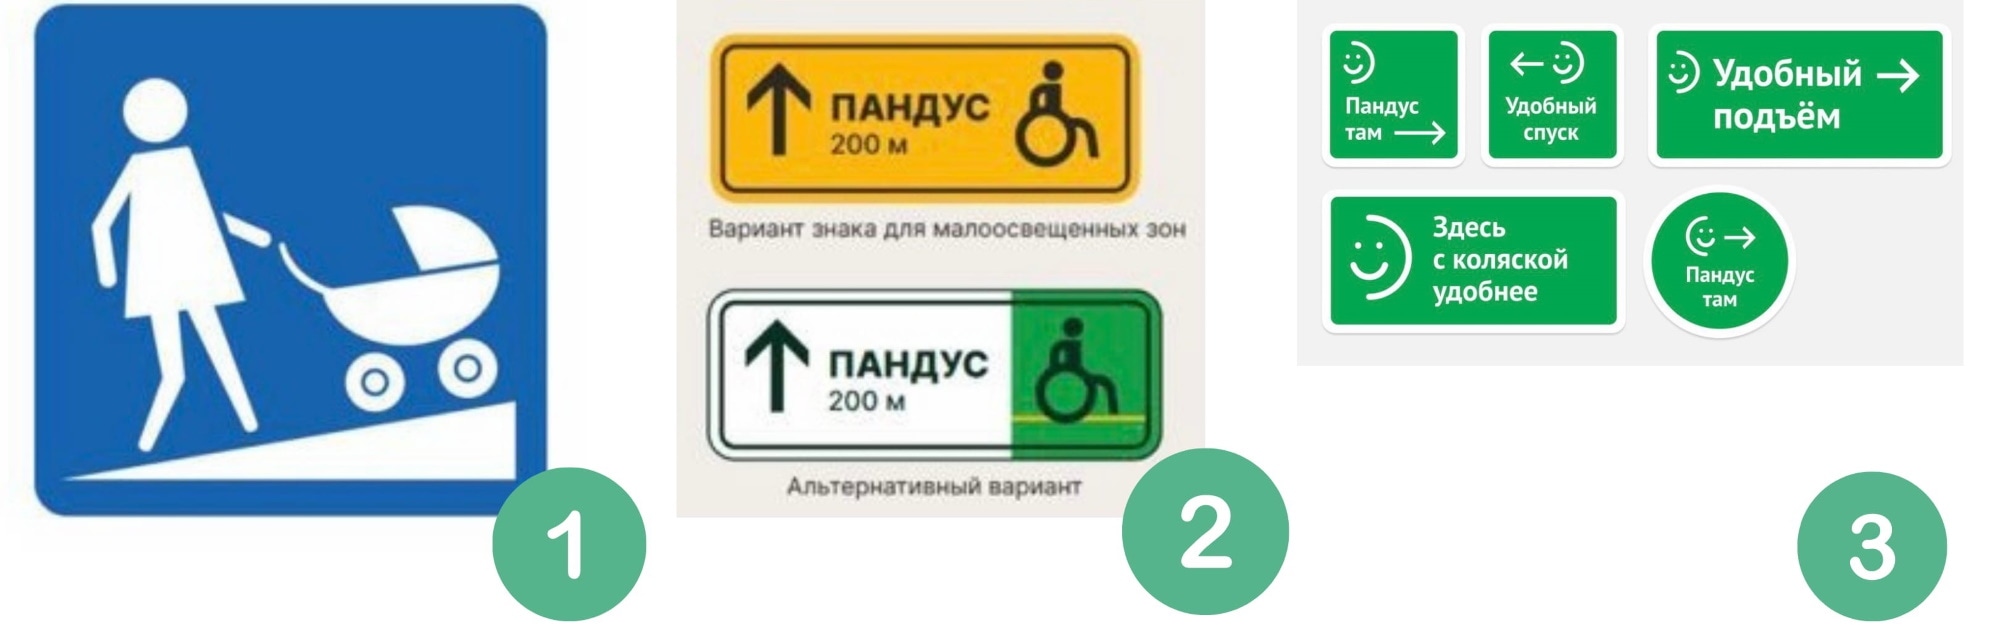 Городское благоустройство, Томские новости, общественный транспорт дороги дорожные знаки новый знак пандус найти дорогу Томичам предлагают проголосовать за новый дорожный знак